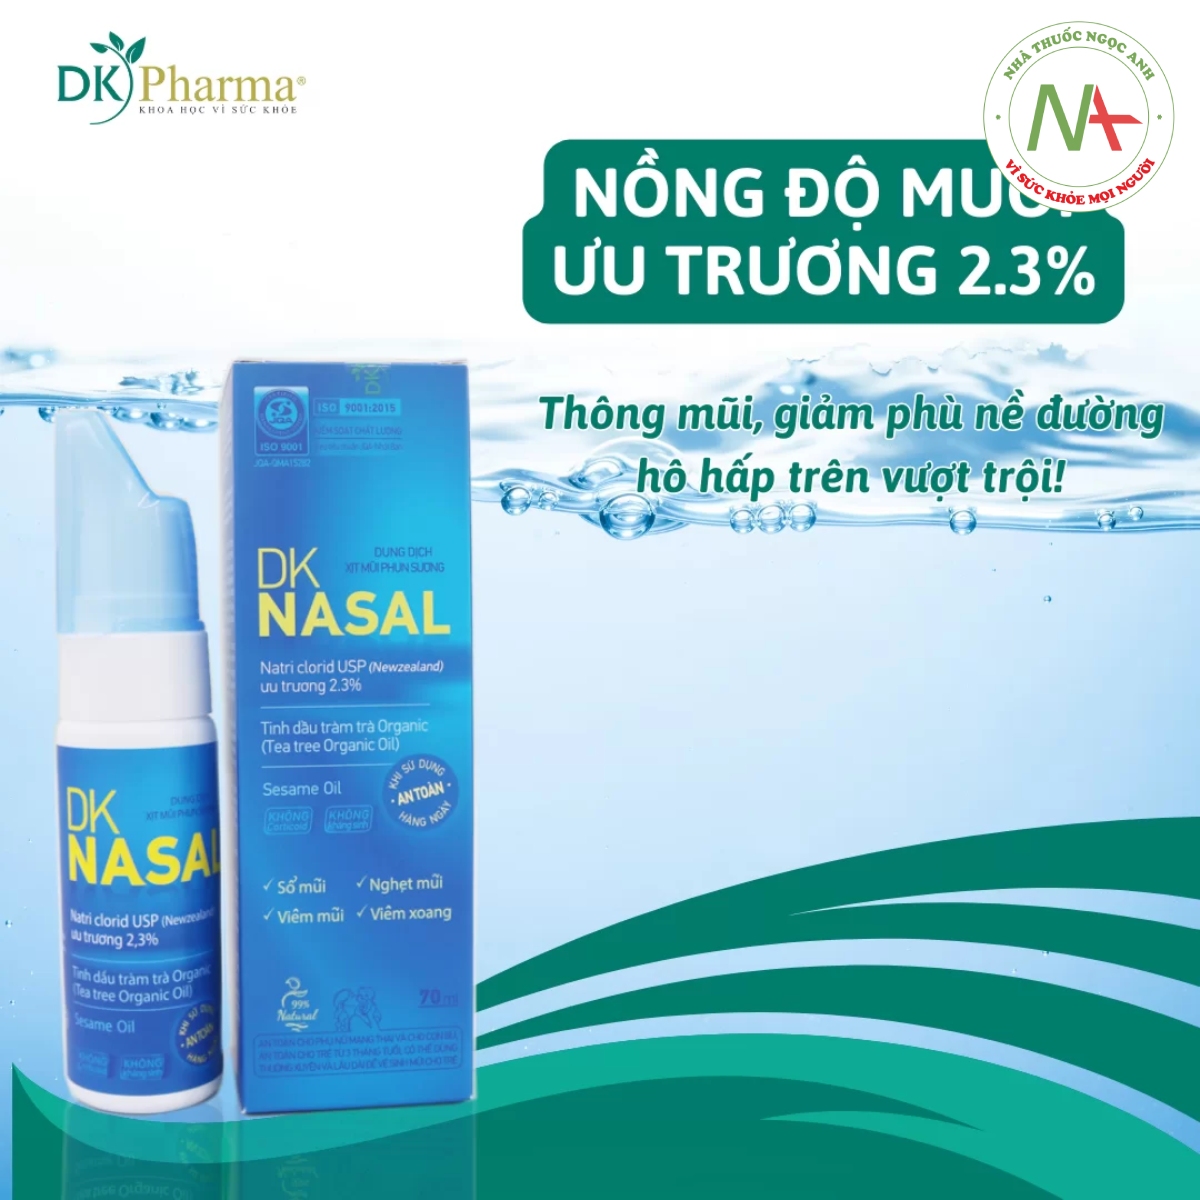 DKNasal 70ml có nồng độ muối ưu trương 2,3%